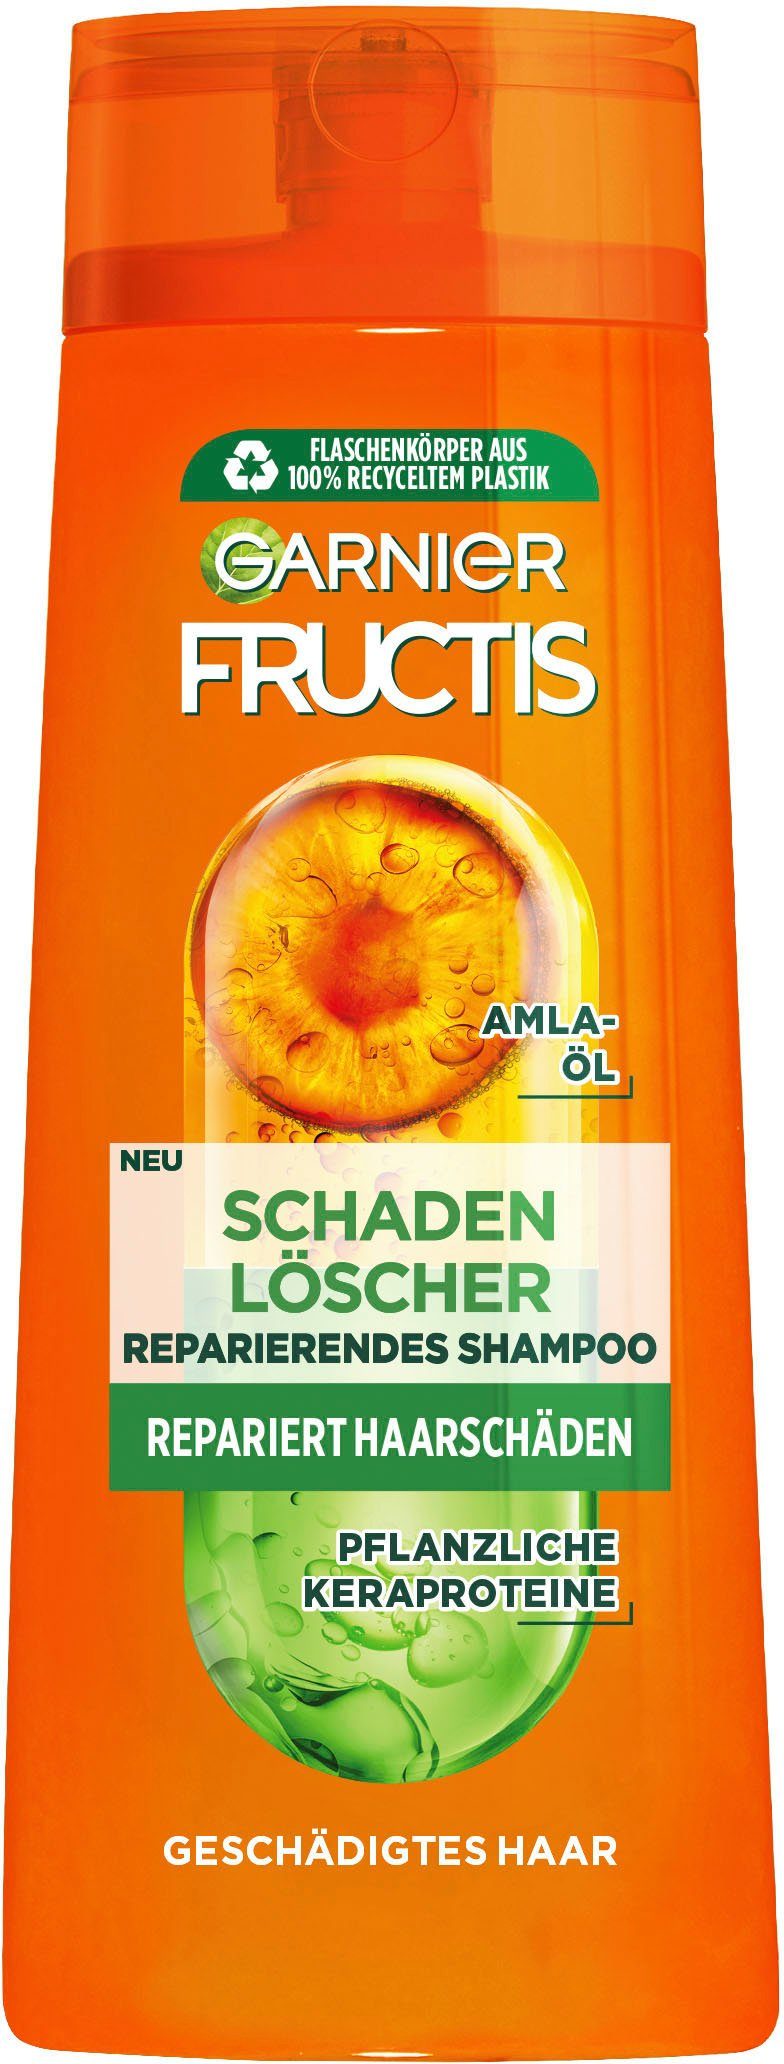 Haarshampoo GARNIER 6-tlg. Set, Fructis Shampoo, Schadenlöscher Garnier